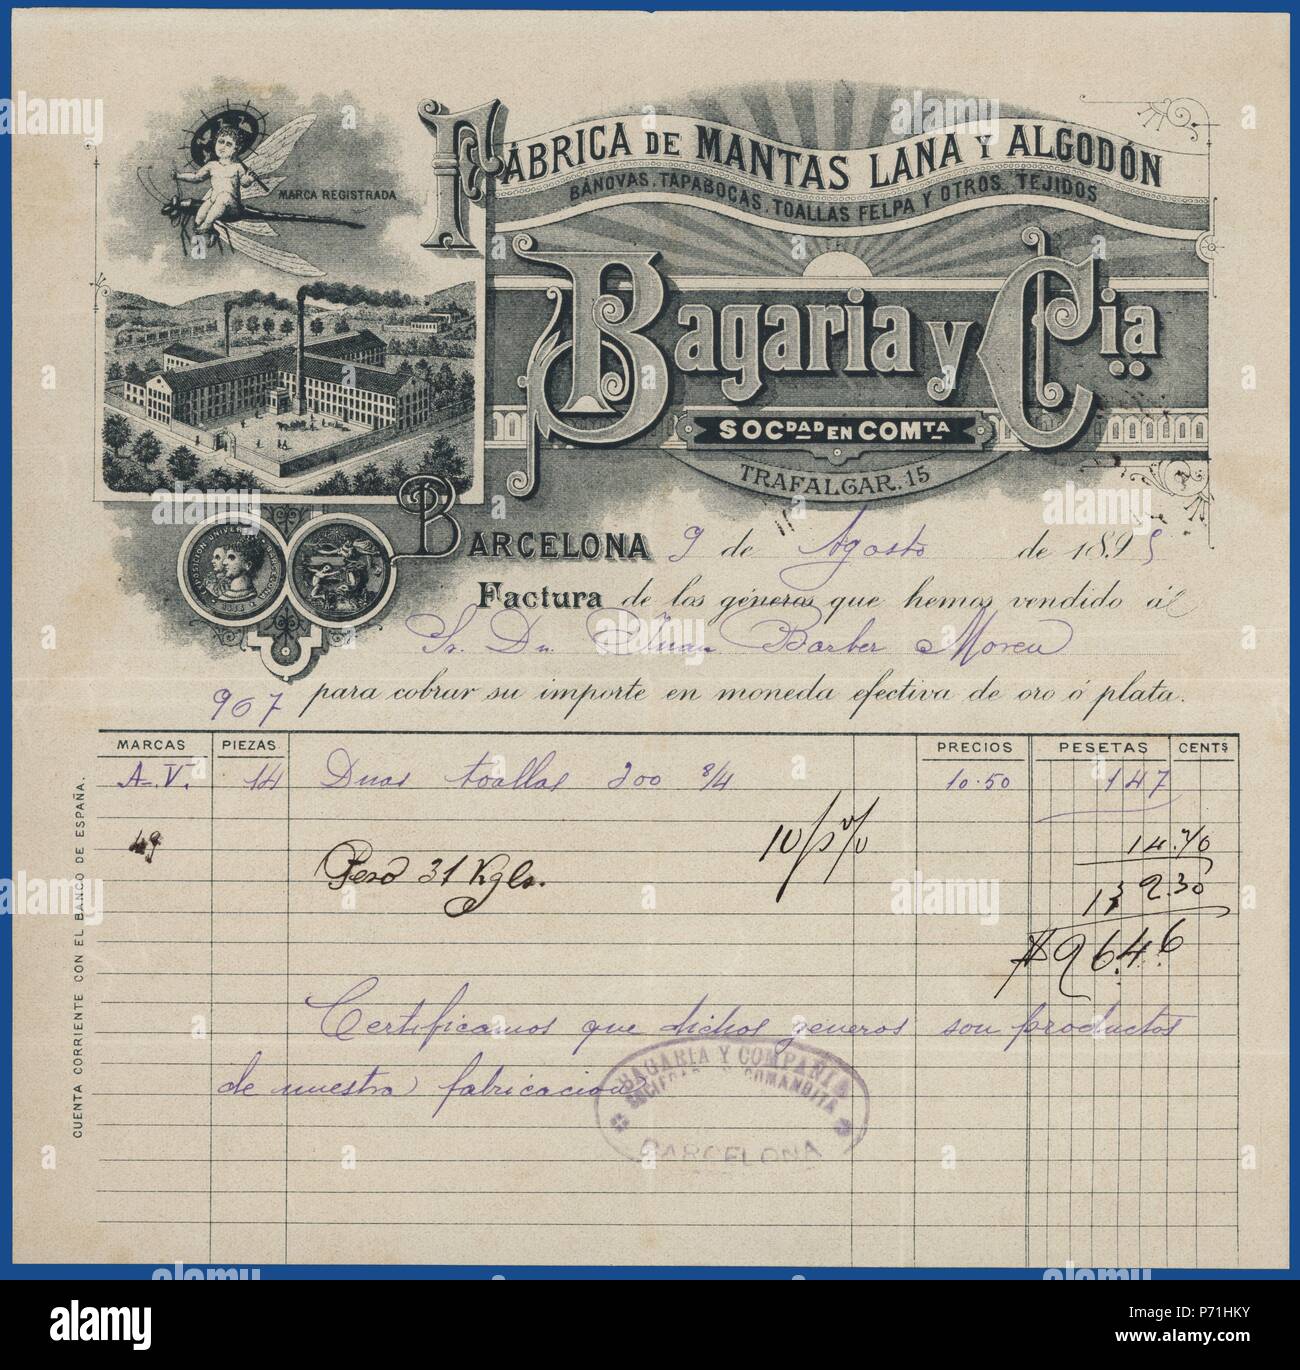 Factura comercial de la fábrica de mantas, lana y algodón de Bagaria y Cía., de Barcelona. Año 1895. Stock Photo